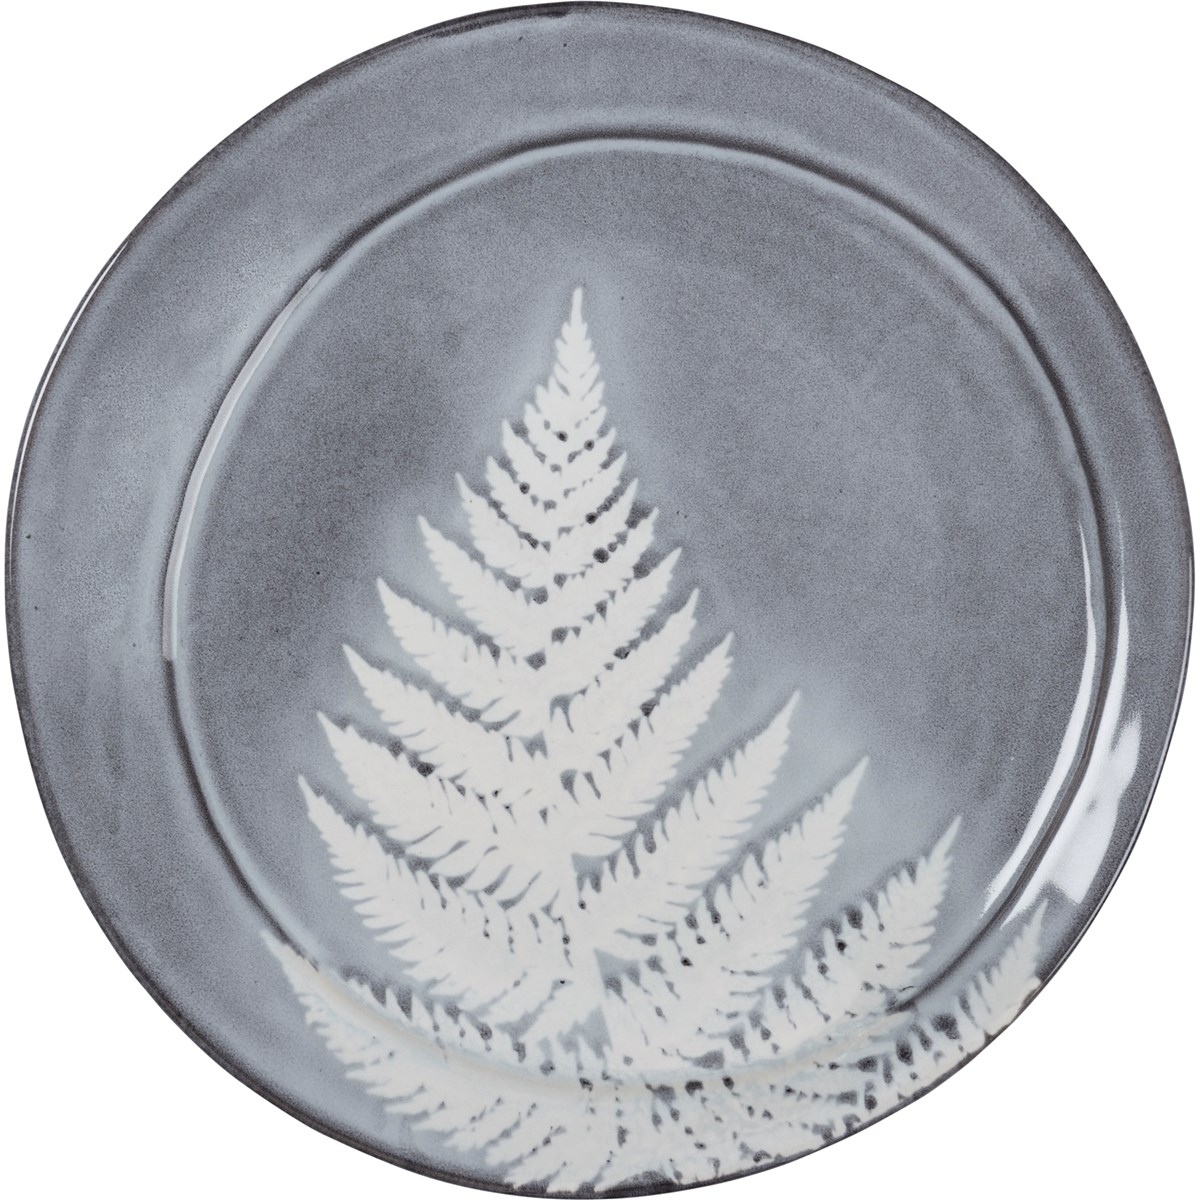 Dinner Plate - Botanical Fern - 10.75" Diameter - Stoneware